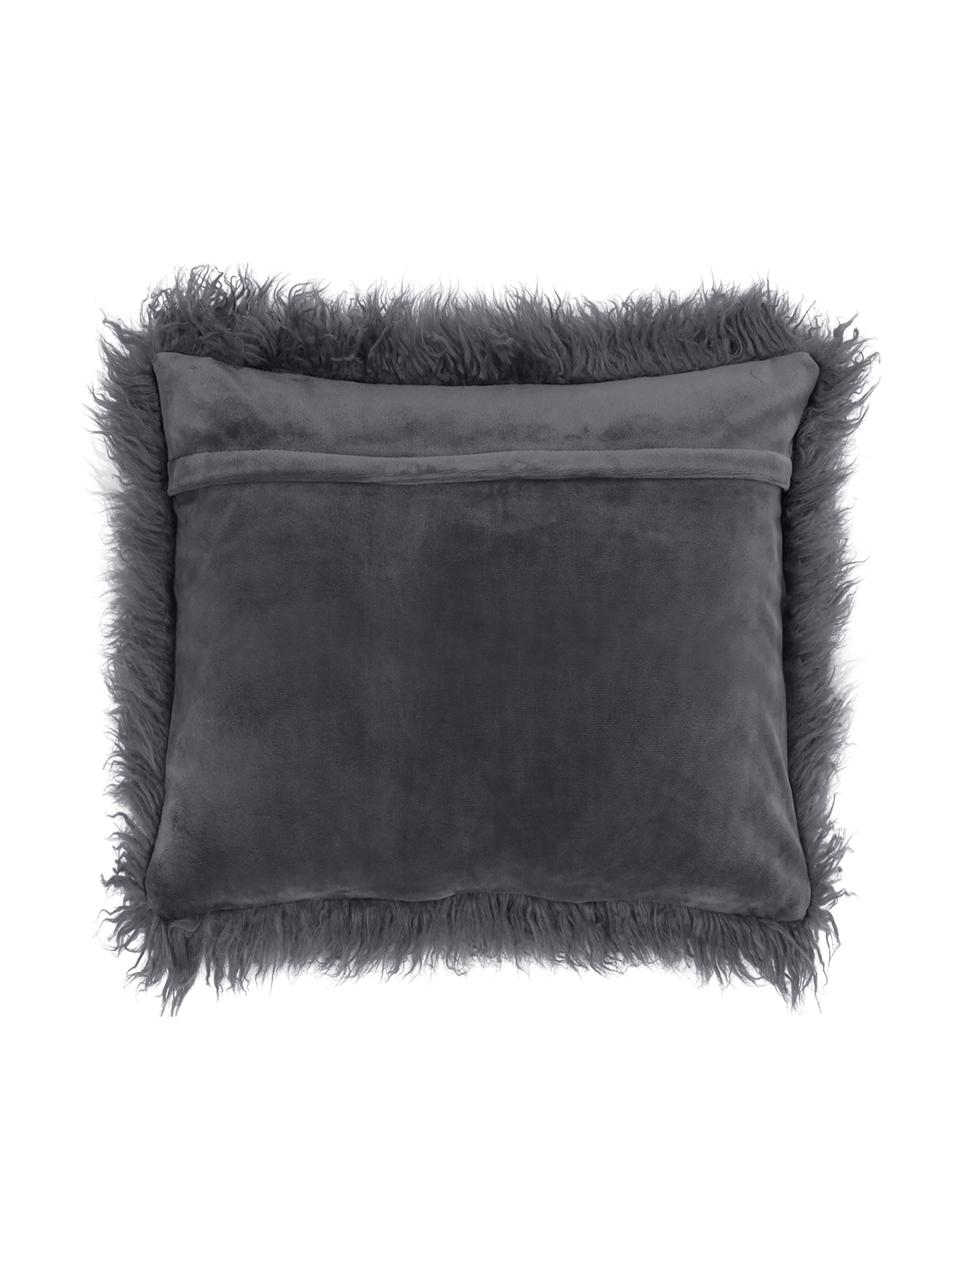 Poszewka na poduszkę ze sztucznego futra Morten, kręcone włosie, Ciemny szary, S 40 x D 40 cm